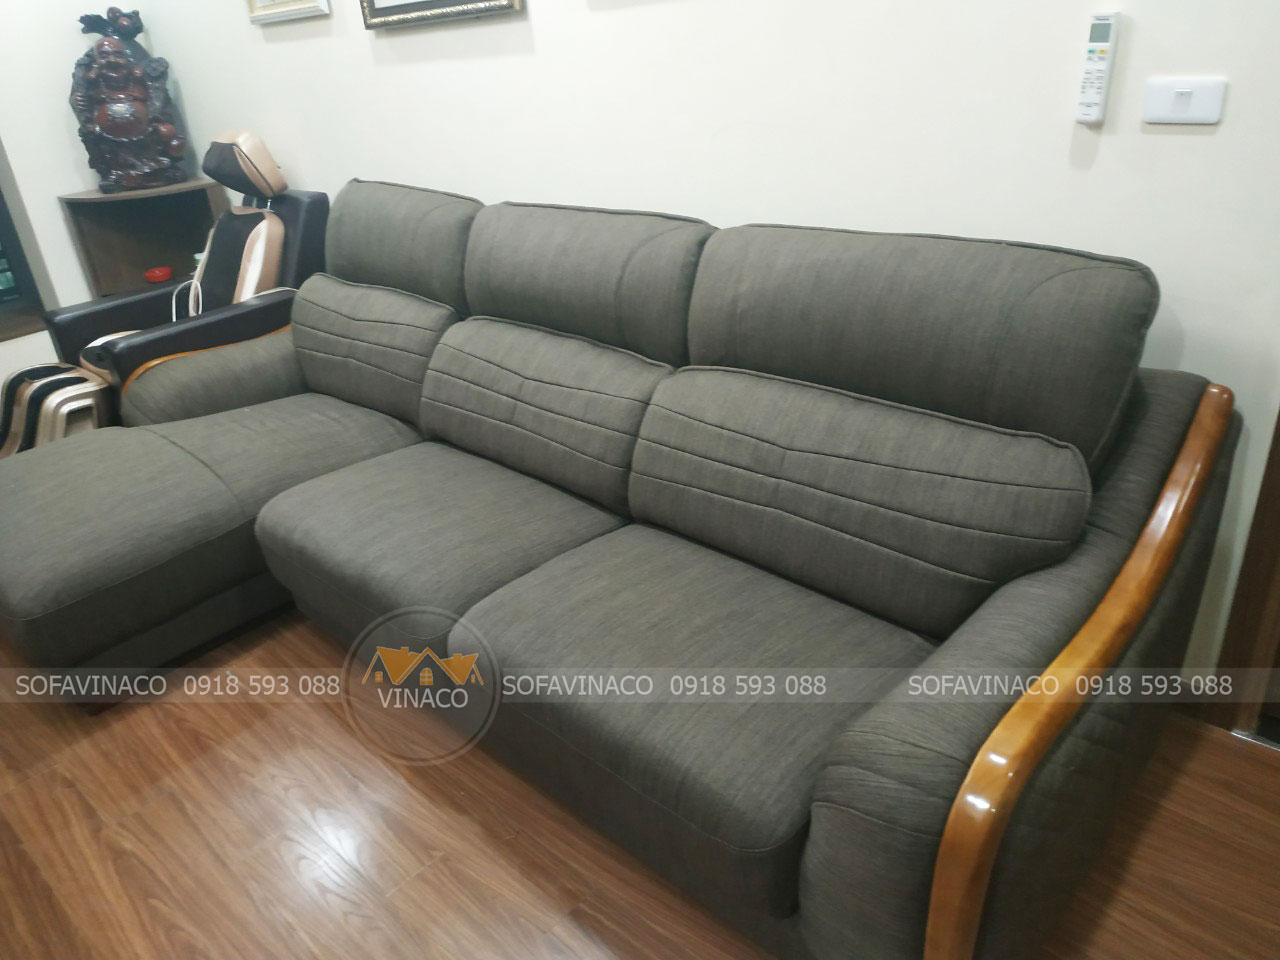 Bí quyết sử dụng sofa góc để tránh vận khí xấu